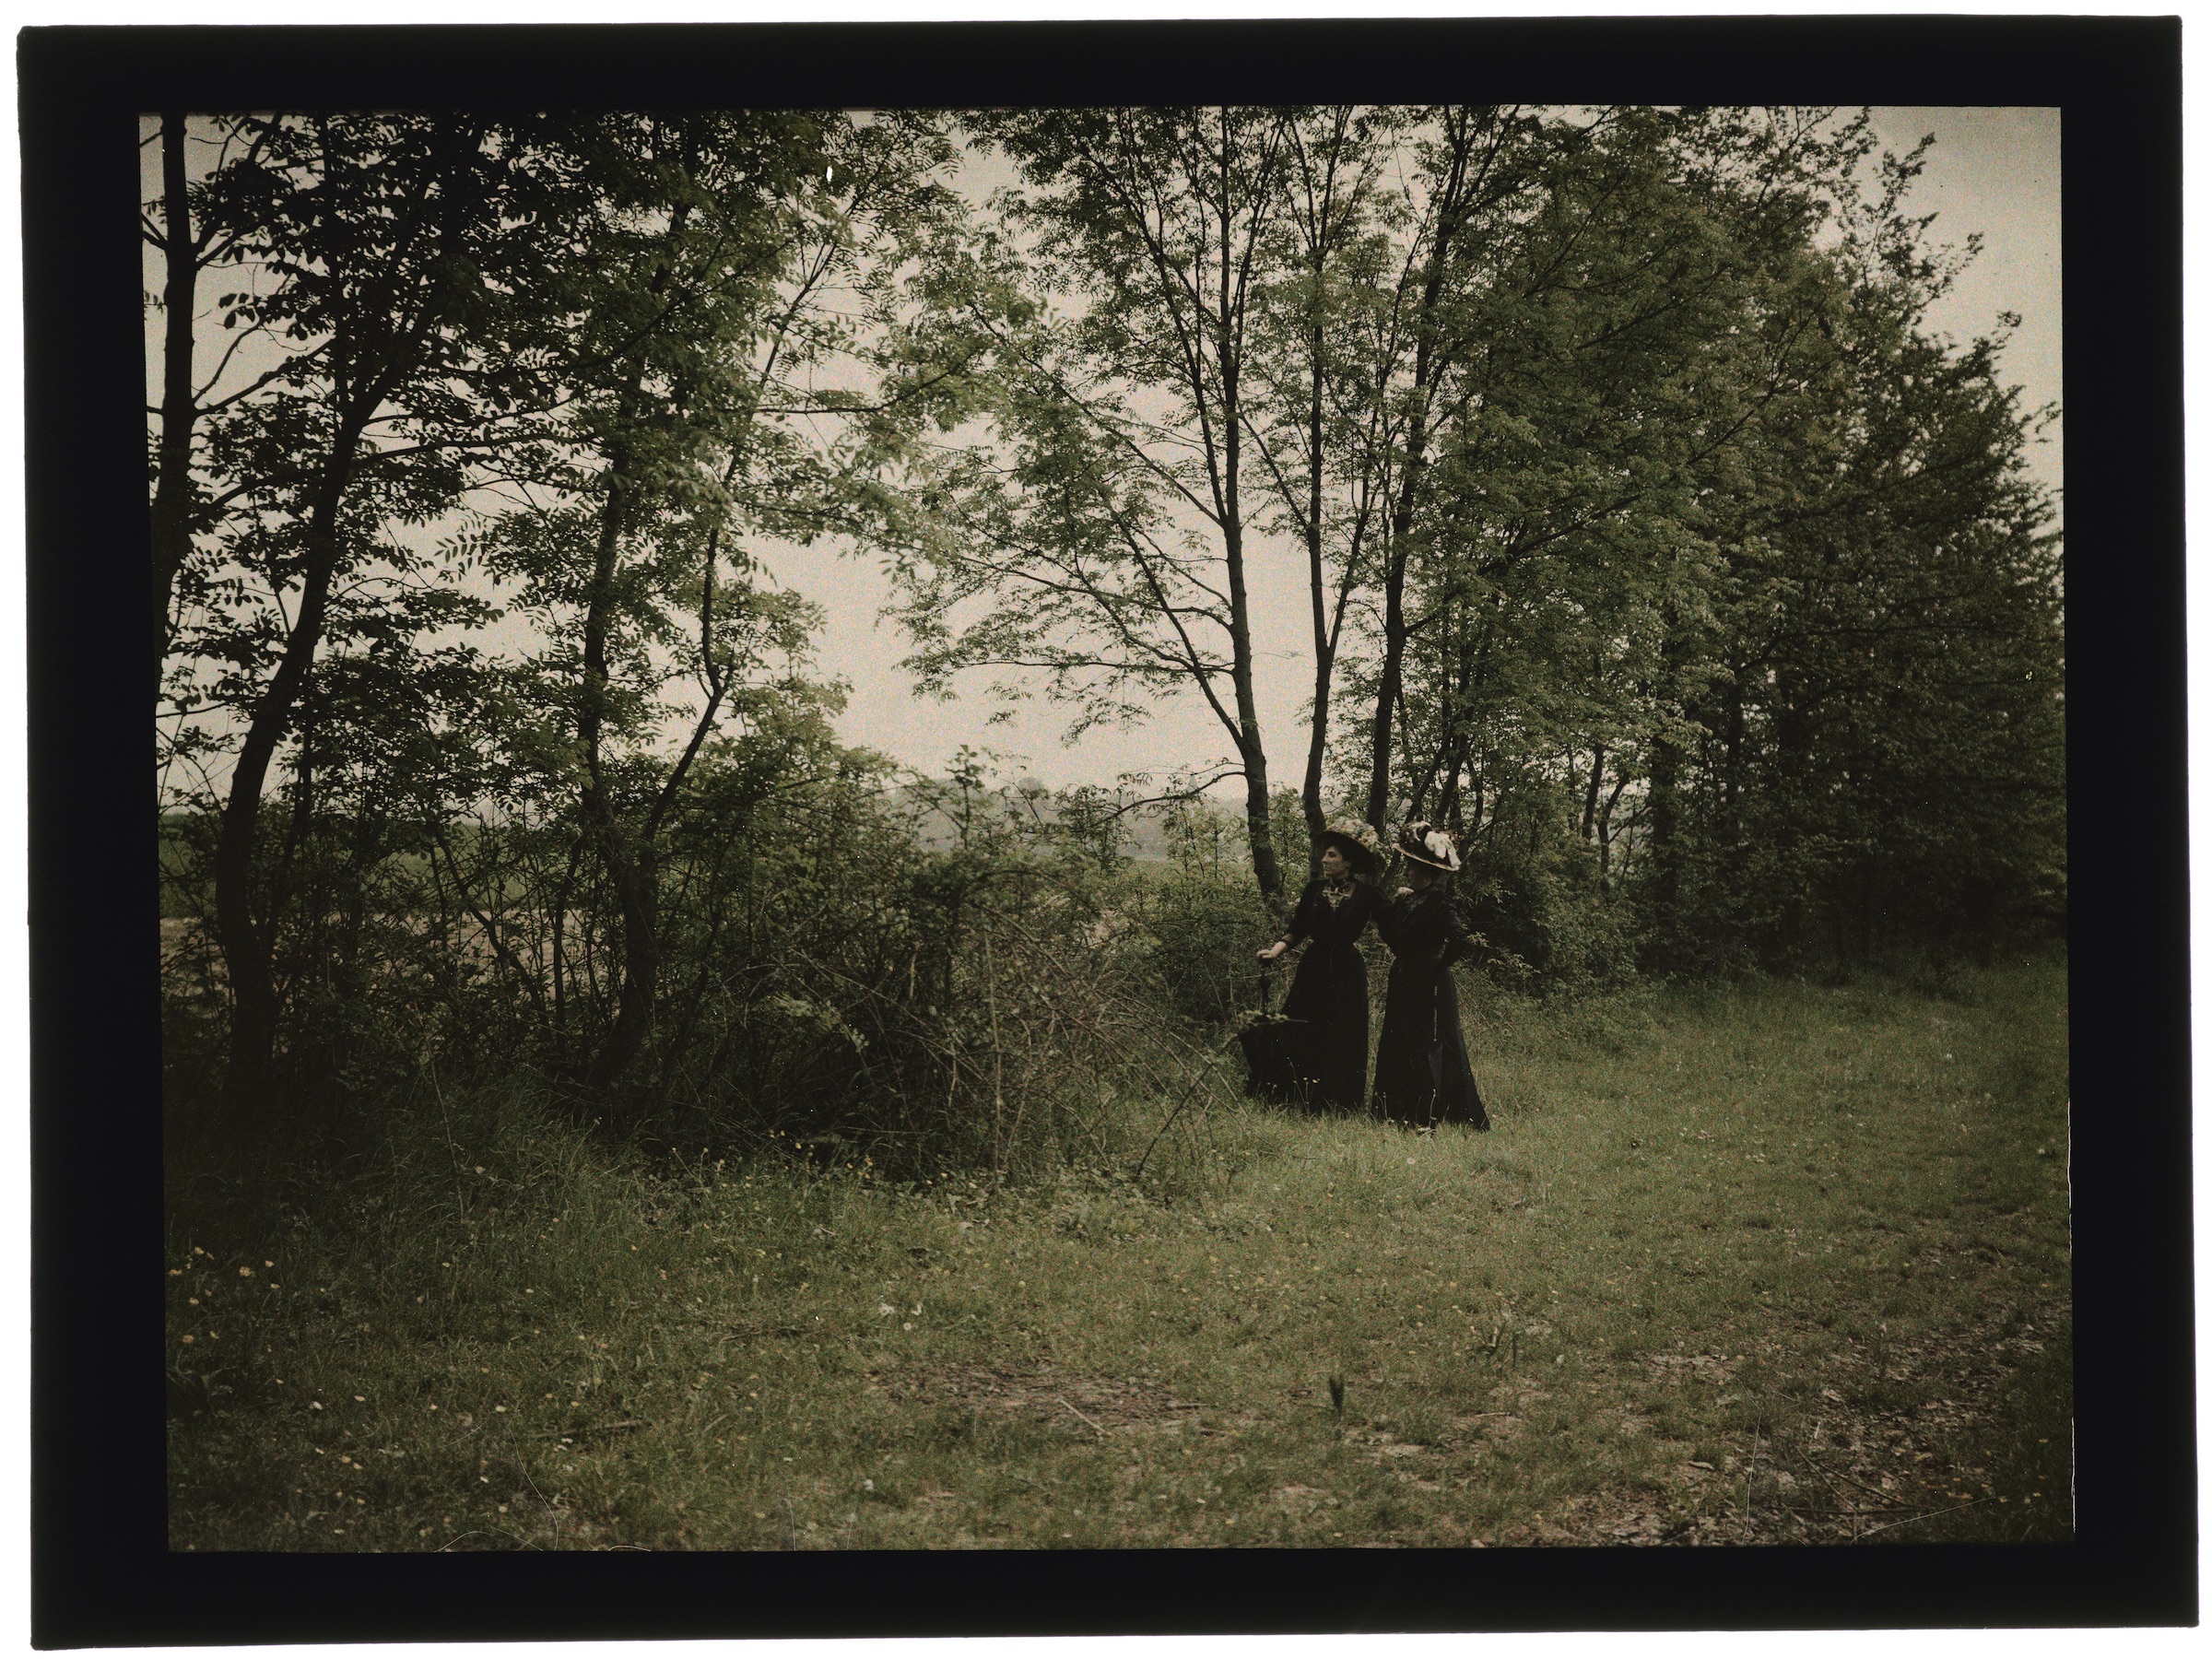 Deux femmes dans la forêt